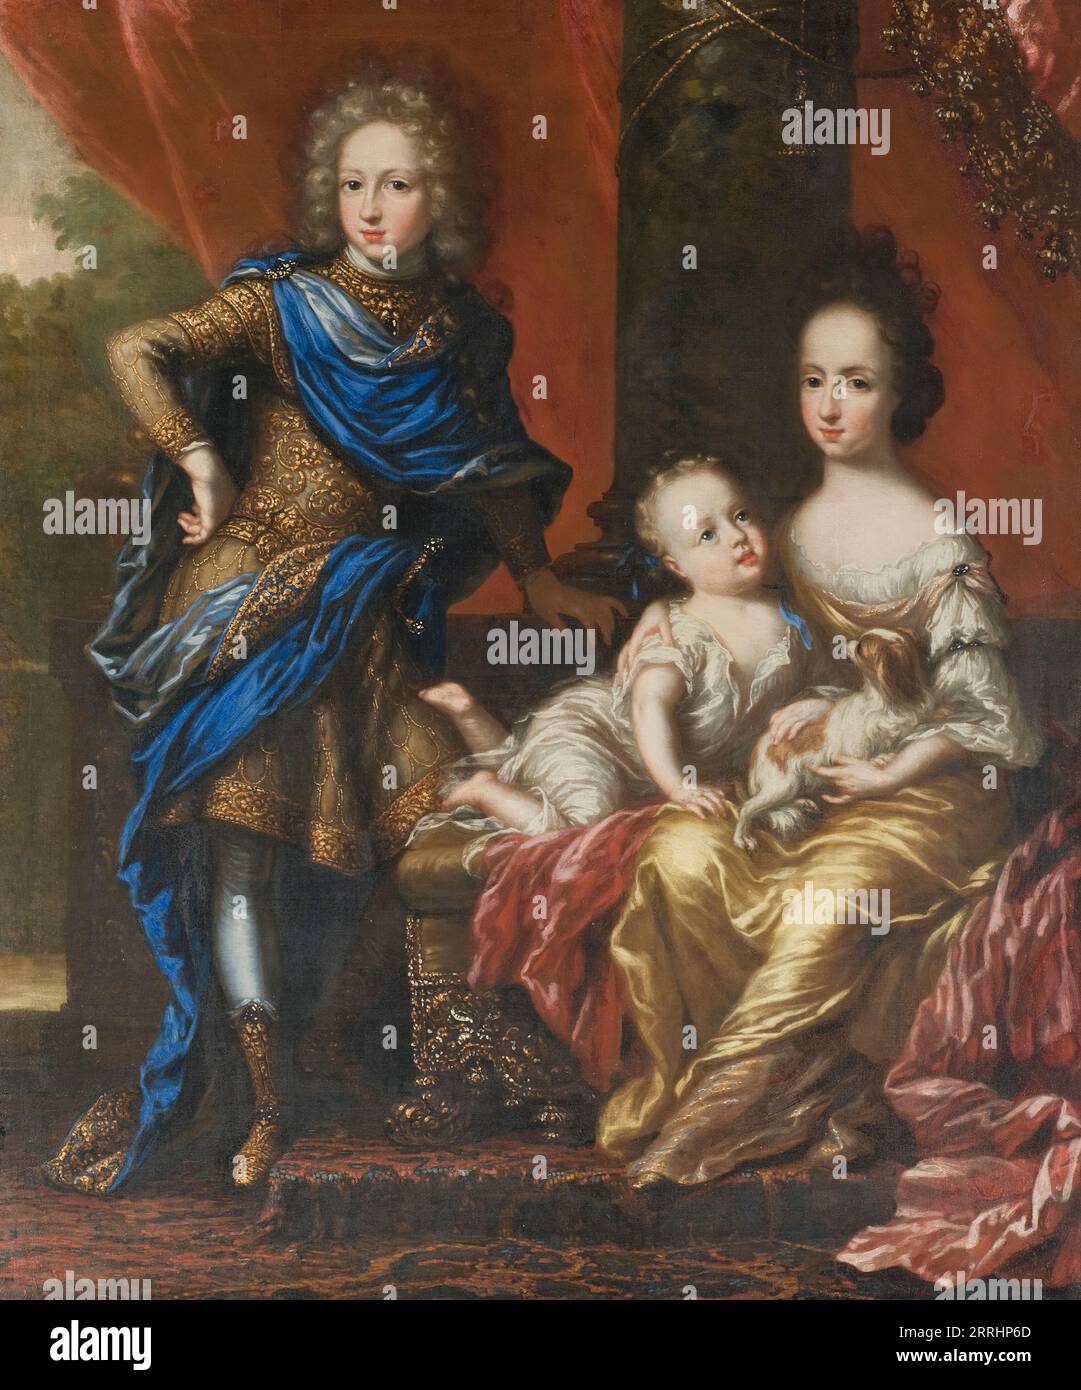 Carlos XII, 1682-1718, rey de Suecia, sus hermanas Hedvig Sofía, 1681-1708, princesa de Suecia, duquesa de Holstein-Gottorp y Ulrika Eleonora la Joven, 1688-1741, reina de Suecia, siglo XVII. Foto de stock